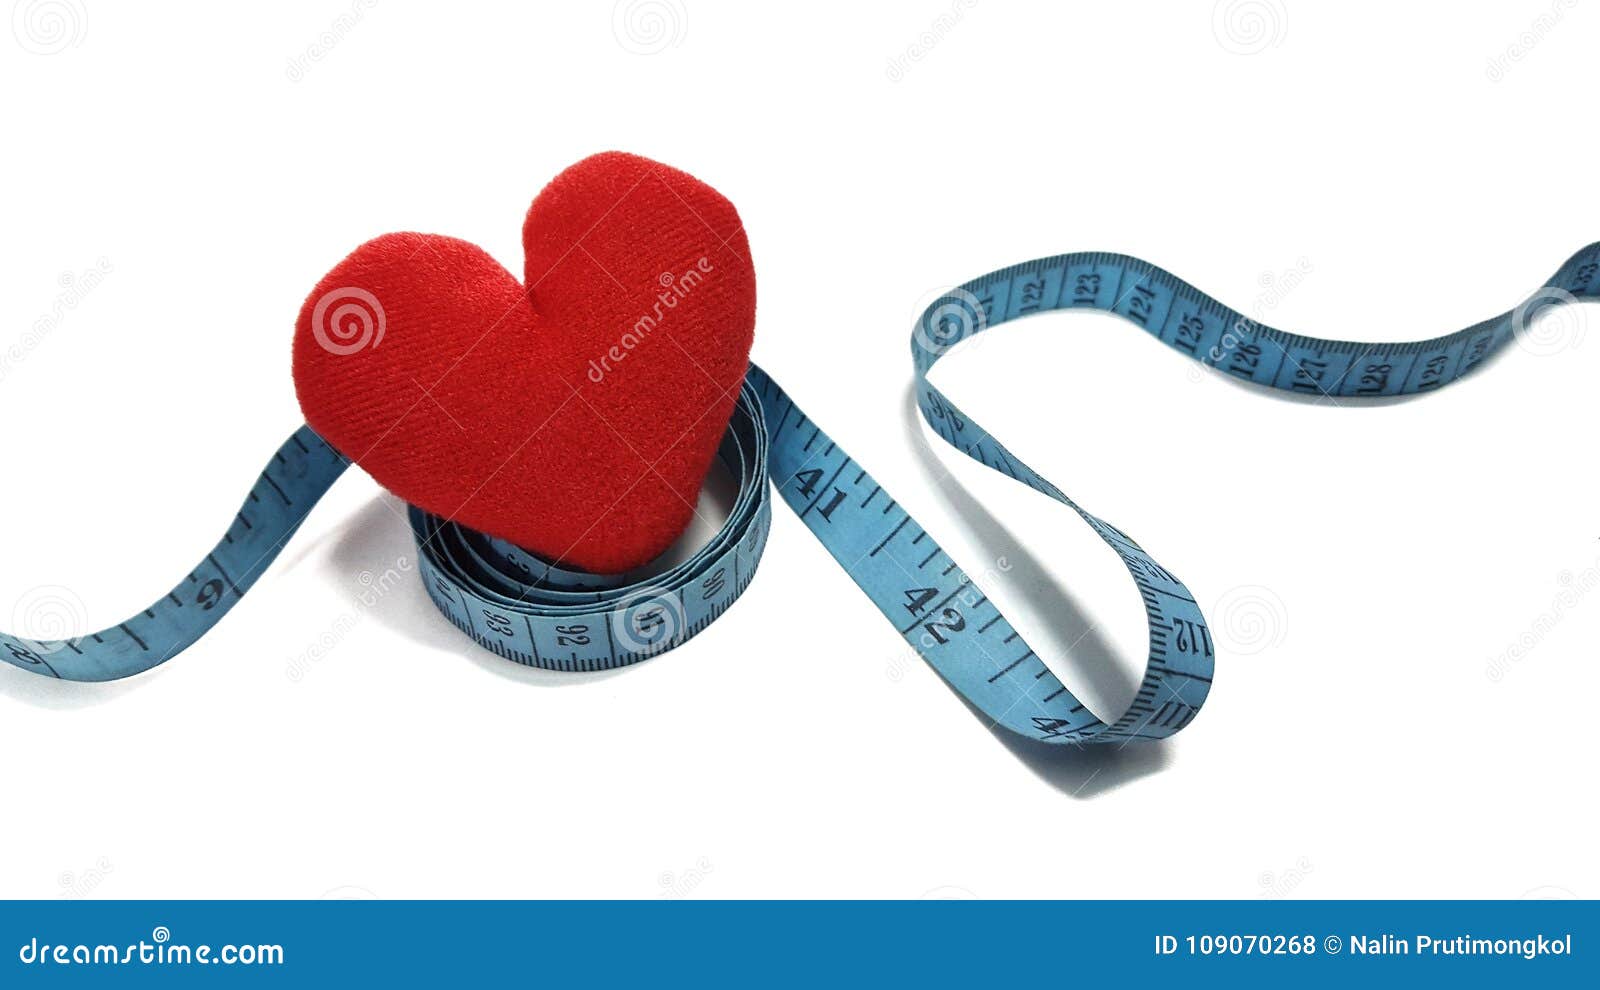 waist circumference affects the heart